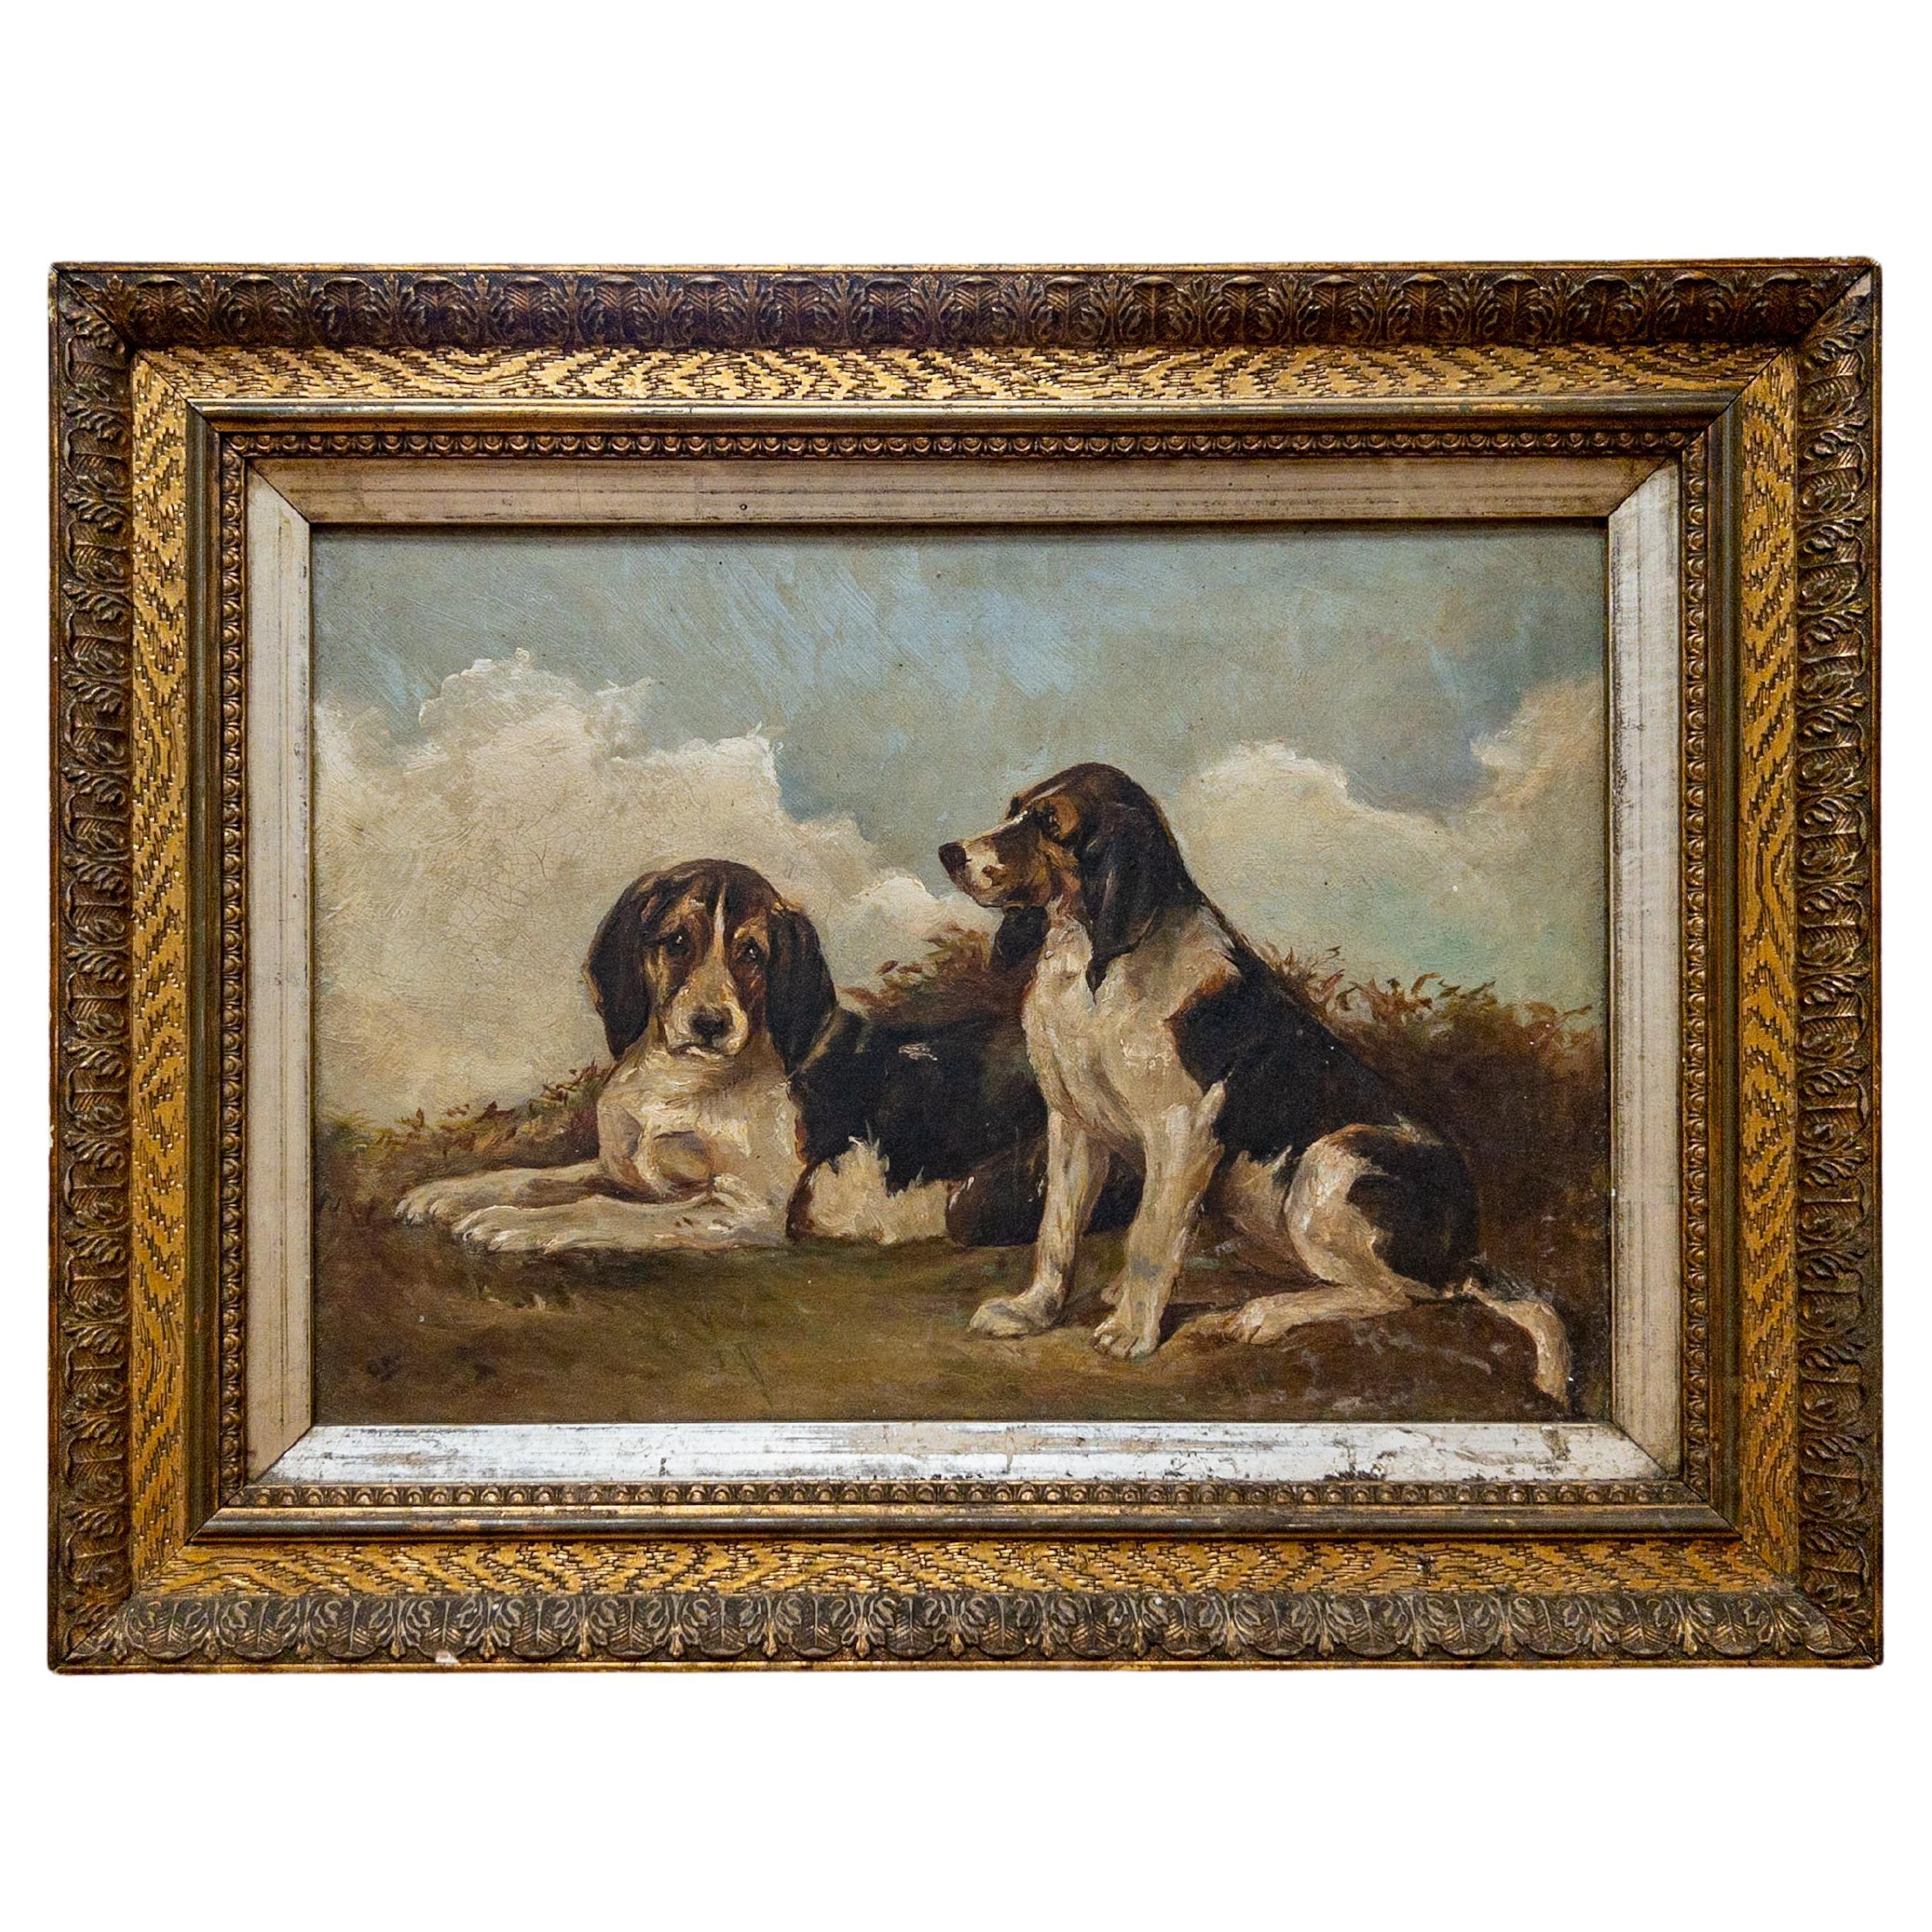 Huile sur toile du 19e siècle sur chien anglais dans un cadre doré